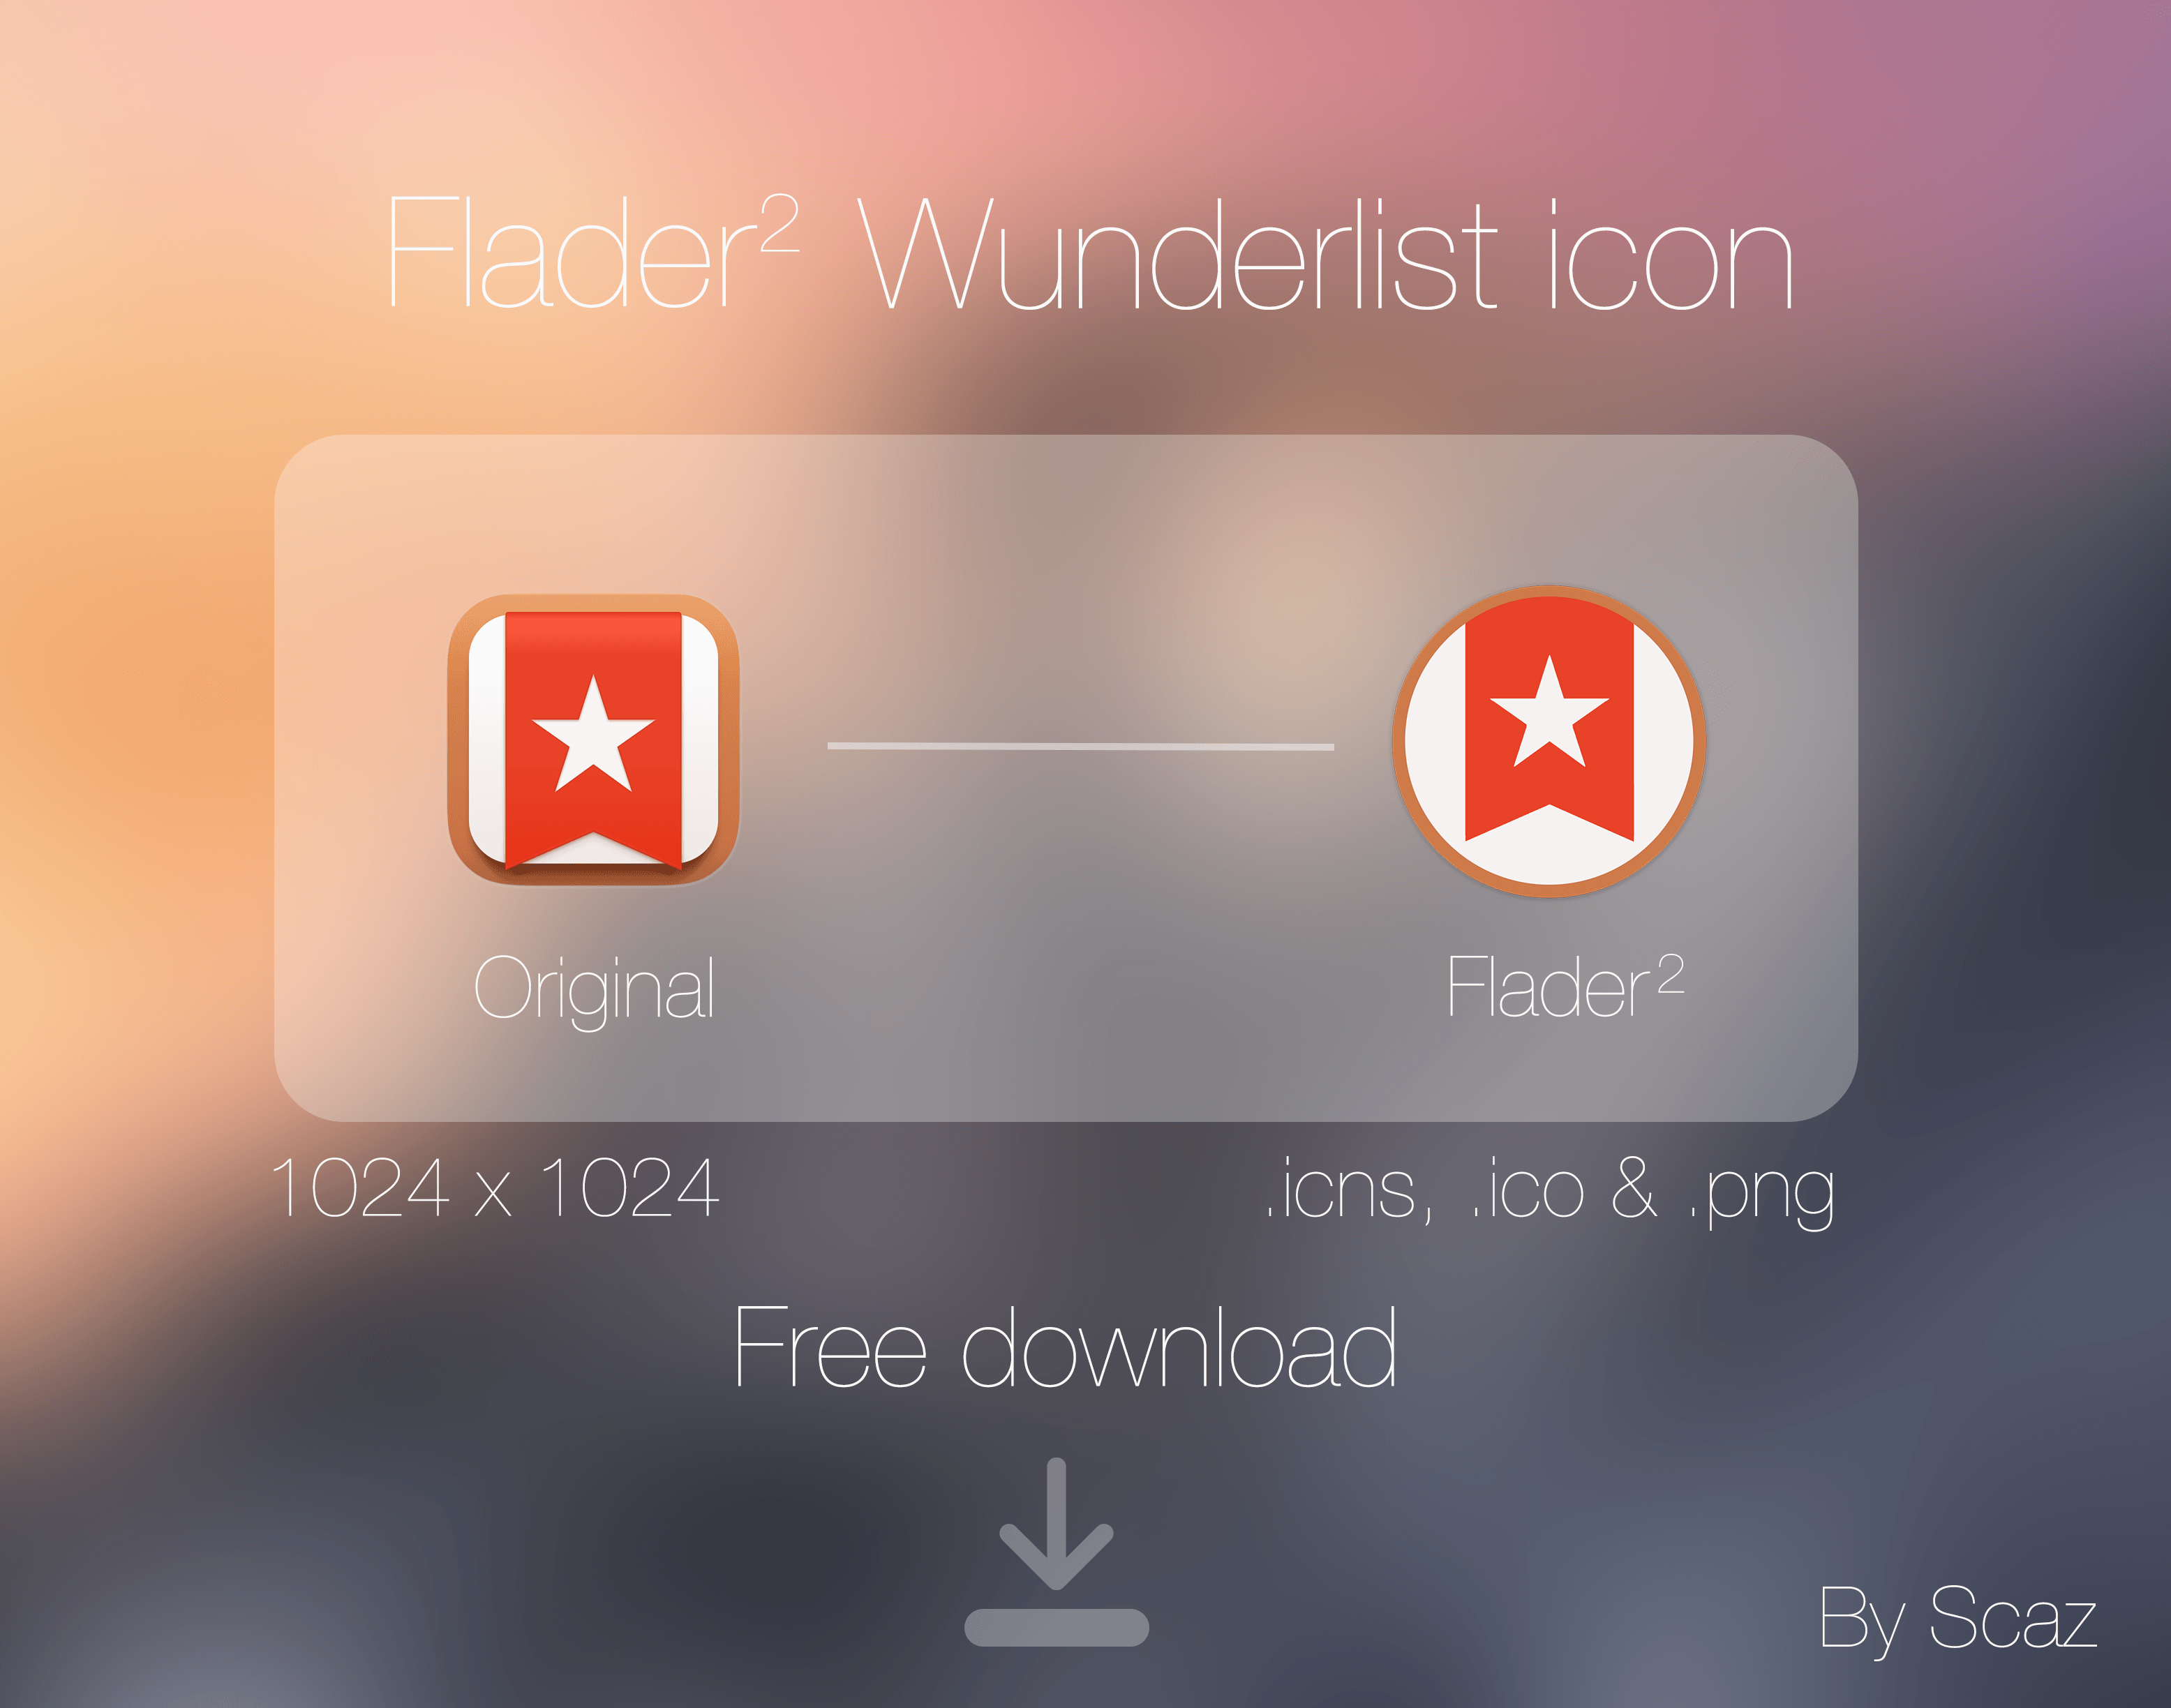 Wunderlist App Logo - Flader 2 : Wunderlist icon App by scafer31000 on DeviantArt